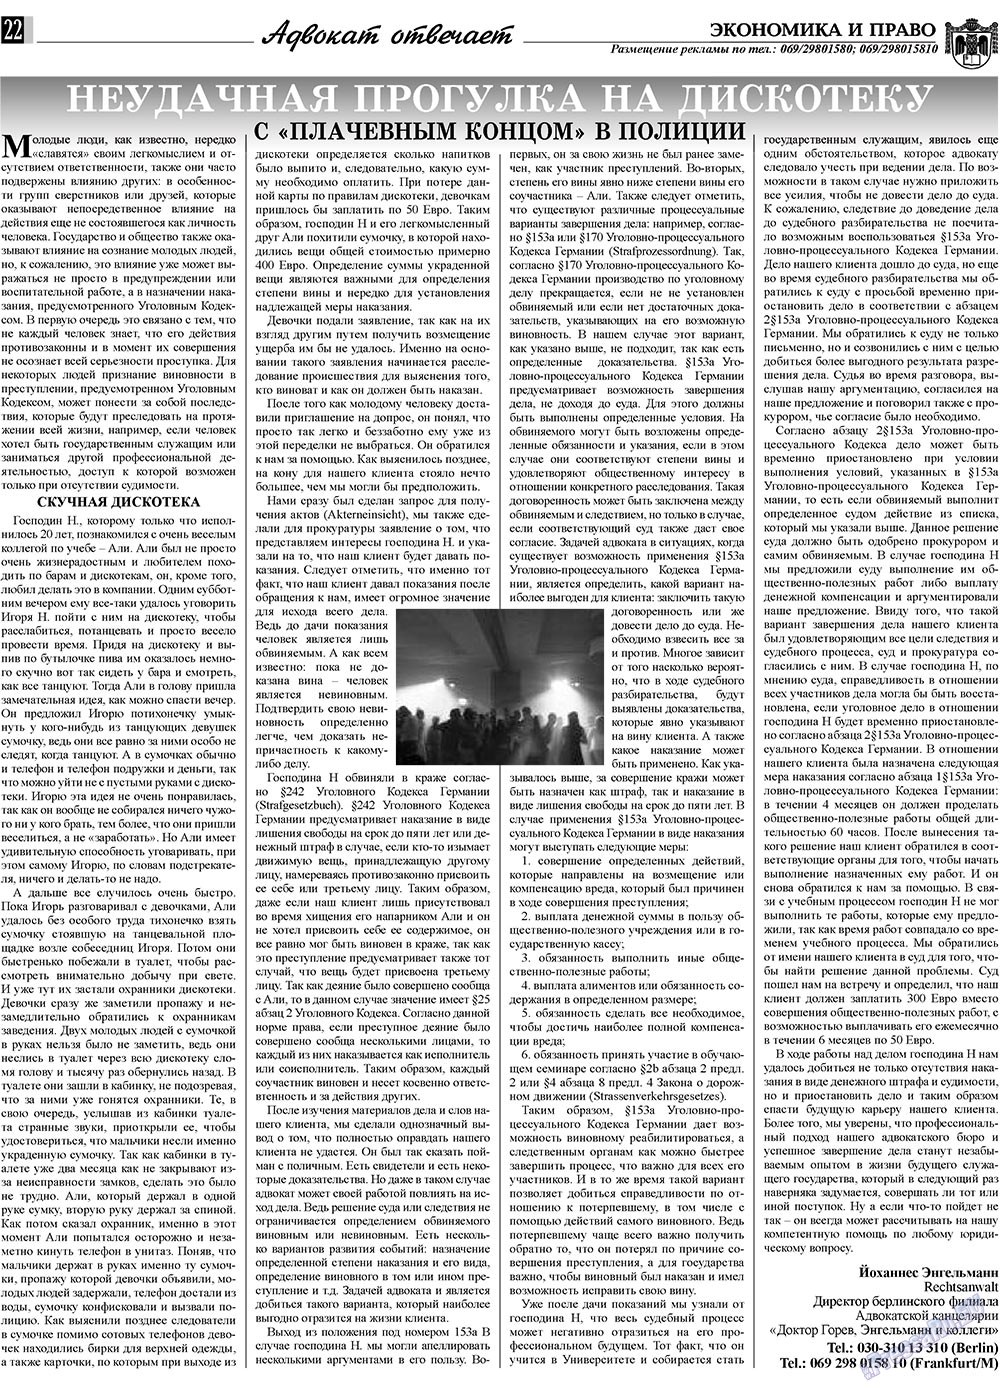 Экономика и право, газета. 2010 №3 стр.22